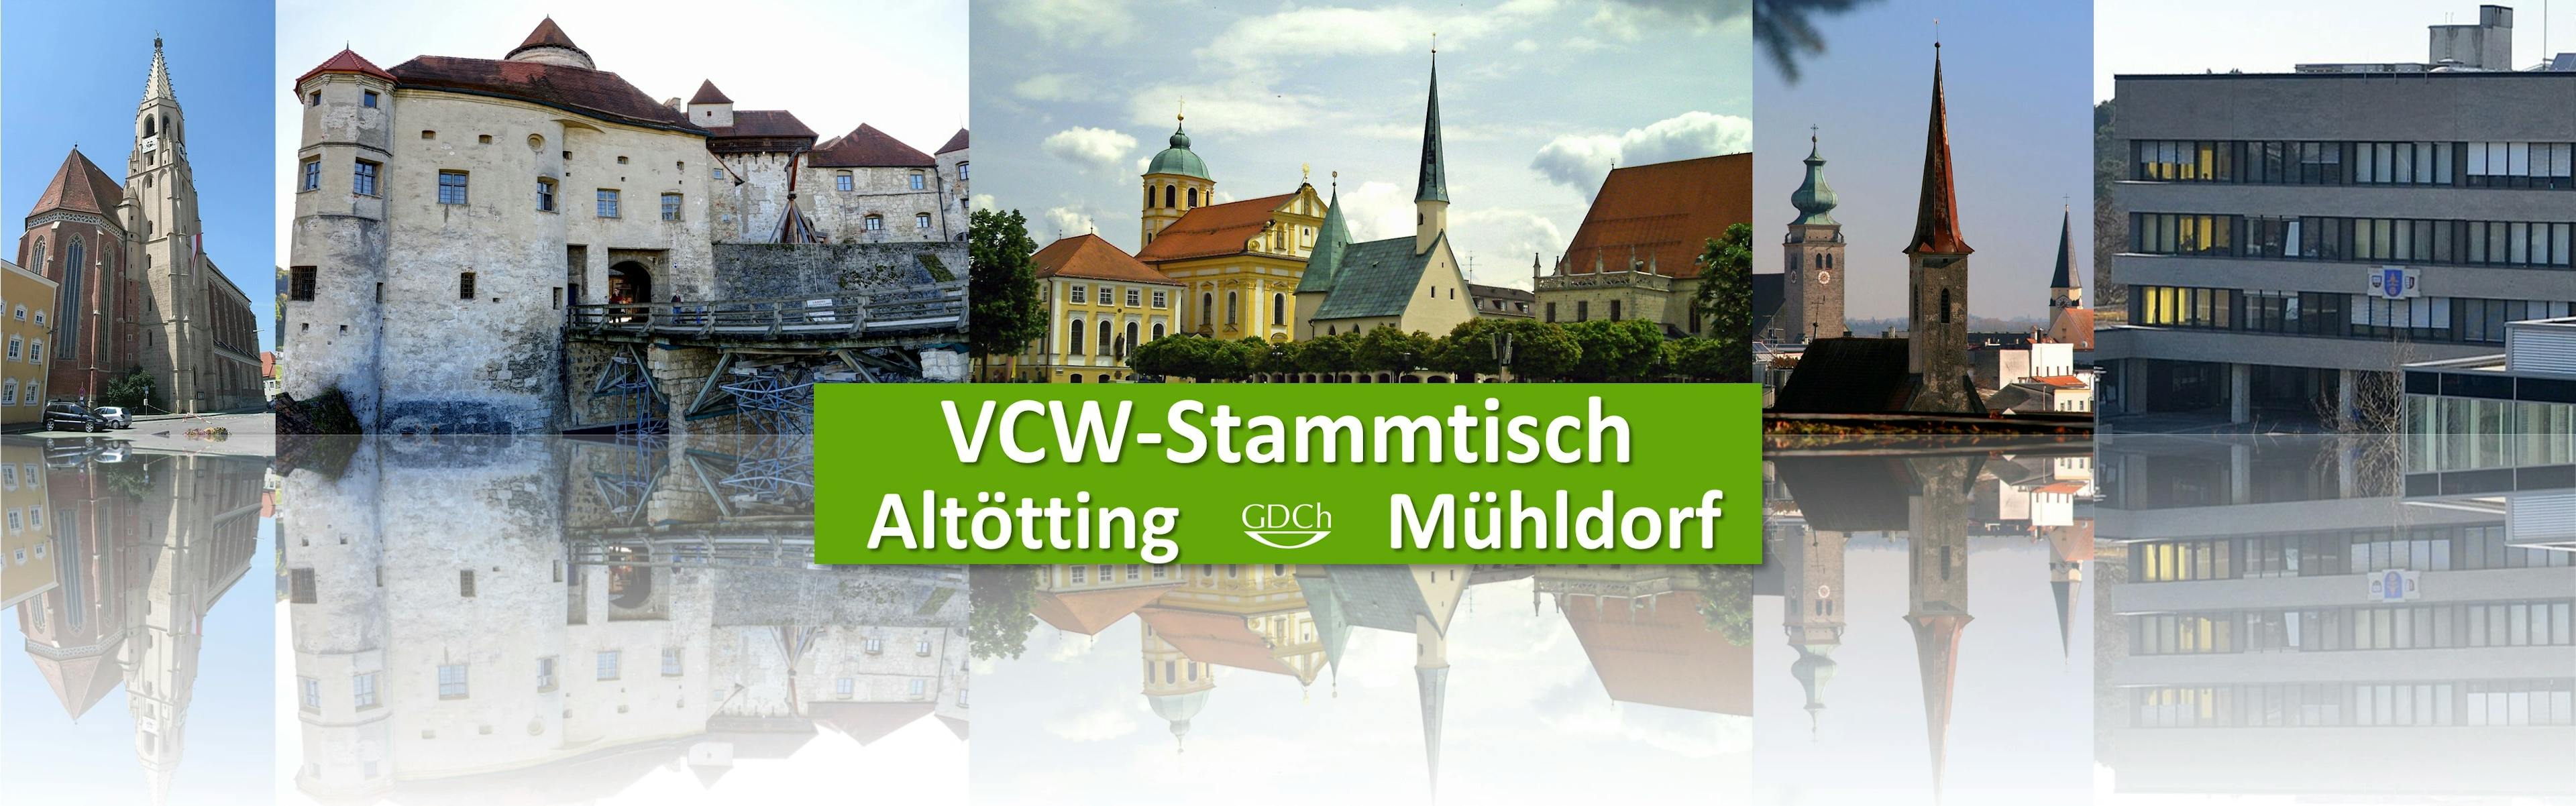 VCW-Stammtisch Altötting/Mühldorf